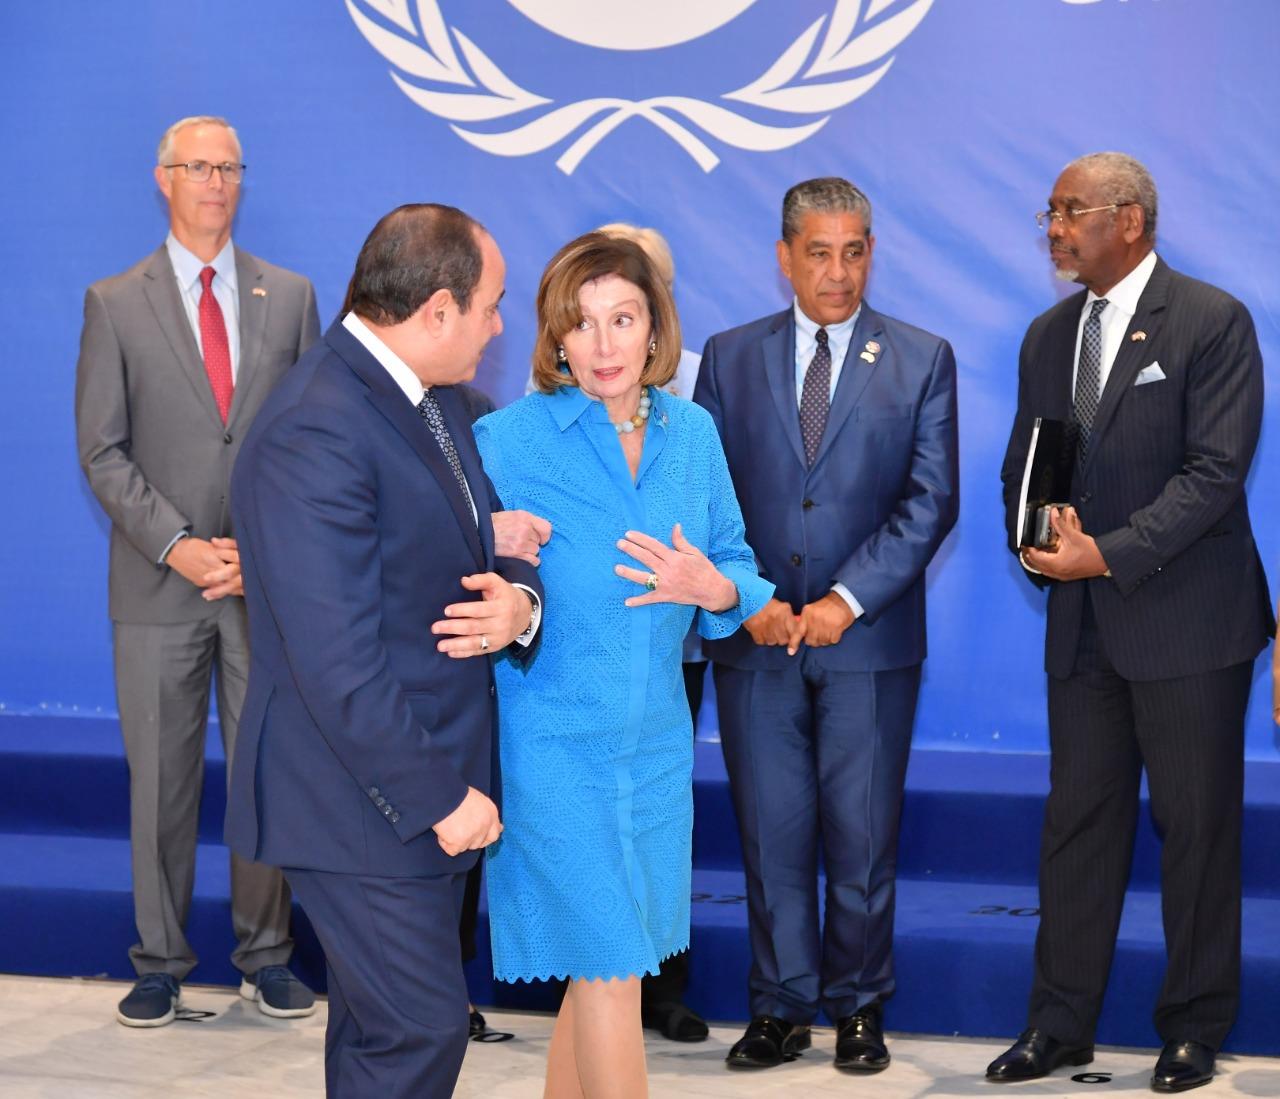 الرئيس يناقش مختلف القضايا الإقليمية والدولية مع نانسي بيلوسي على رأسها مكافحة الإرهاب